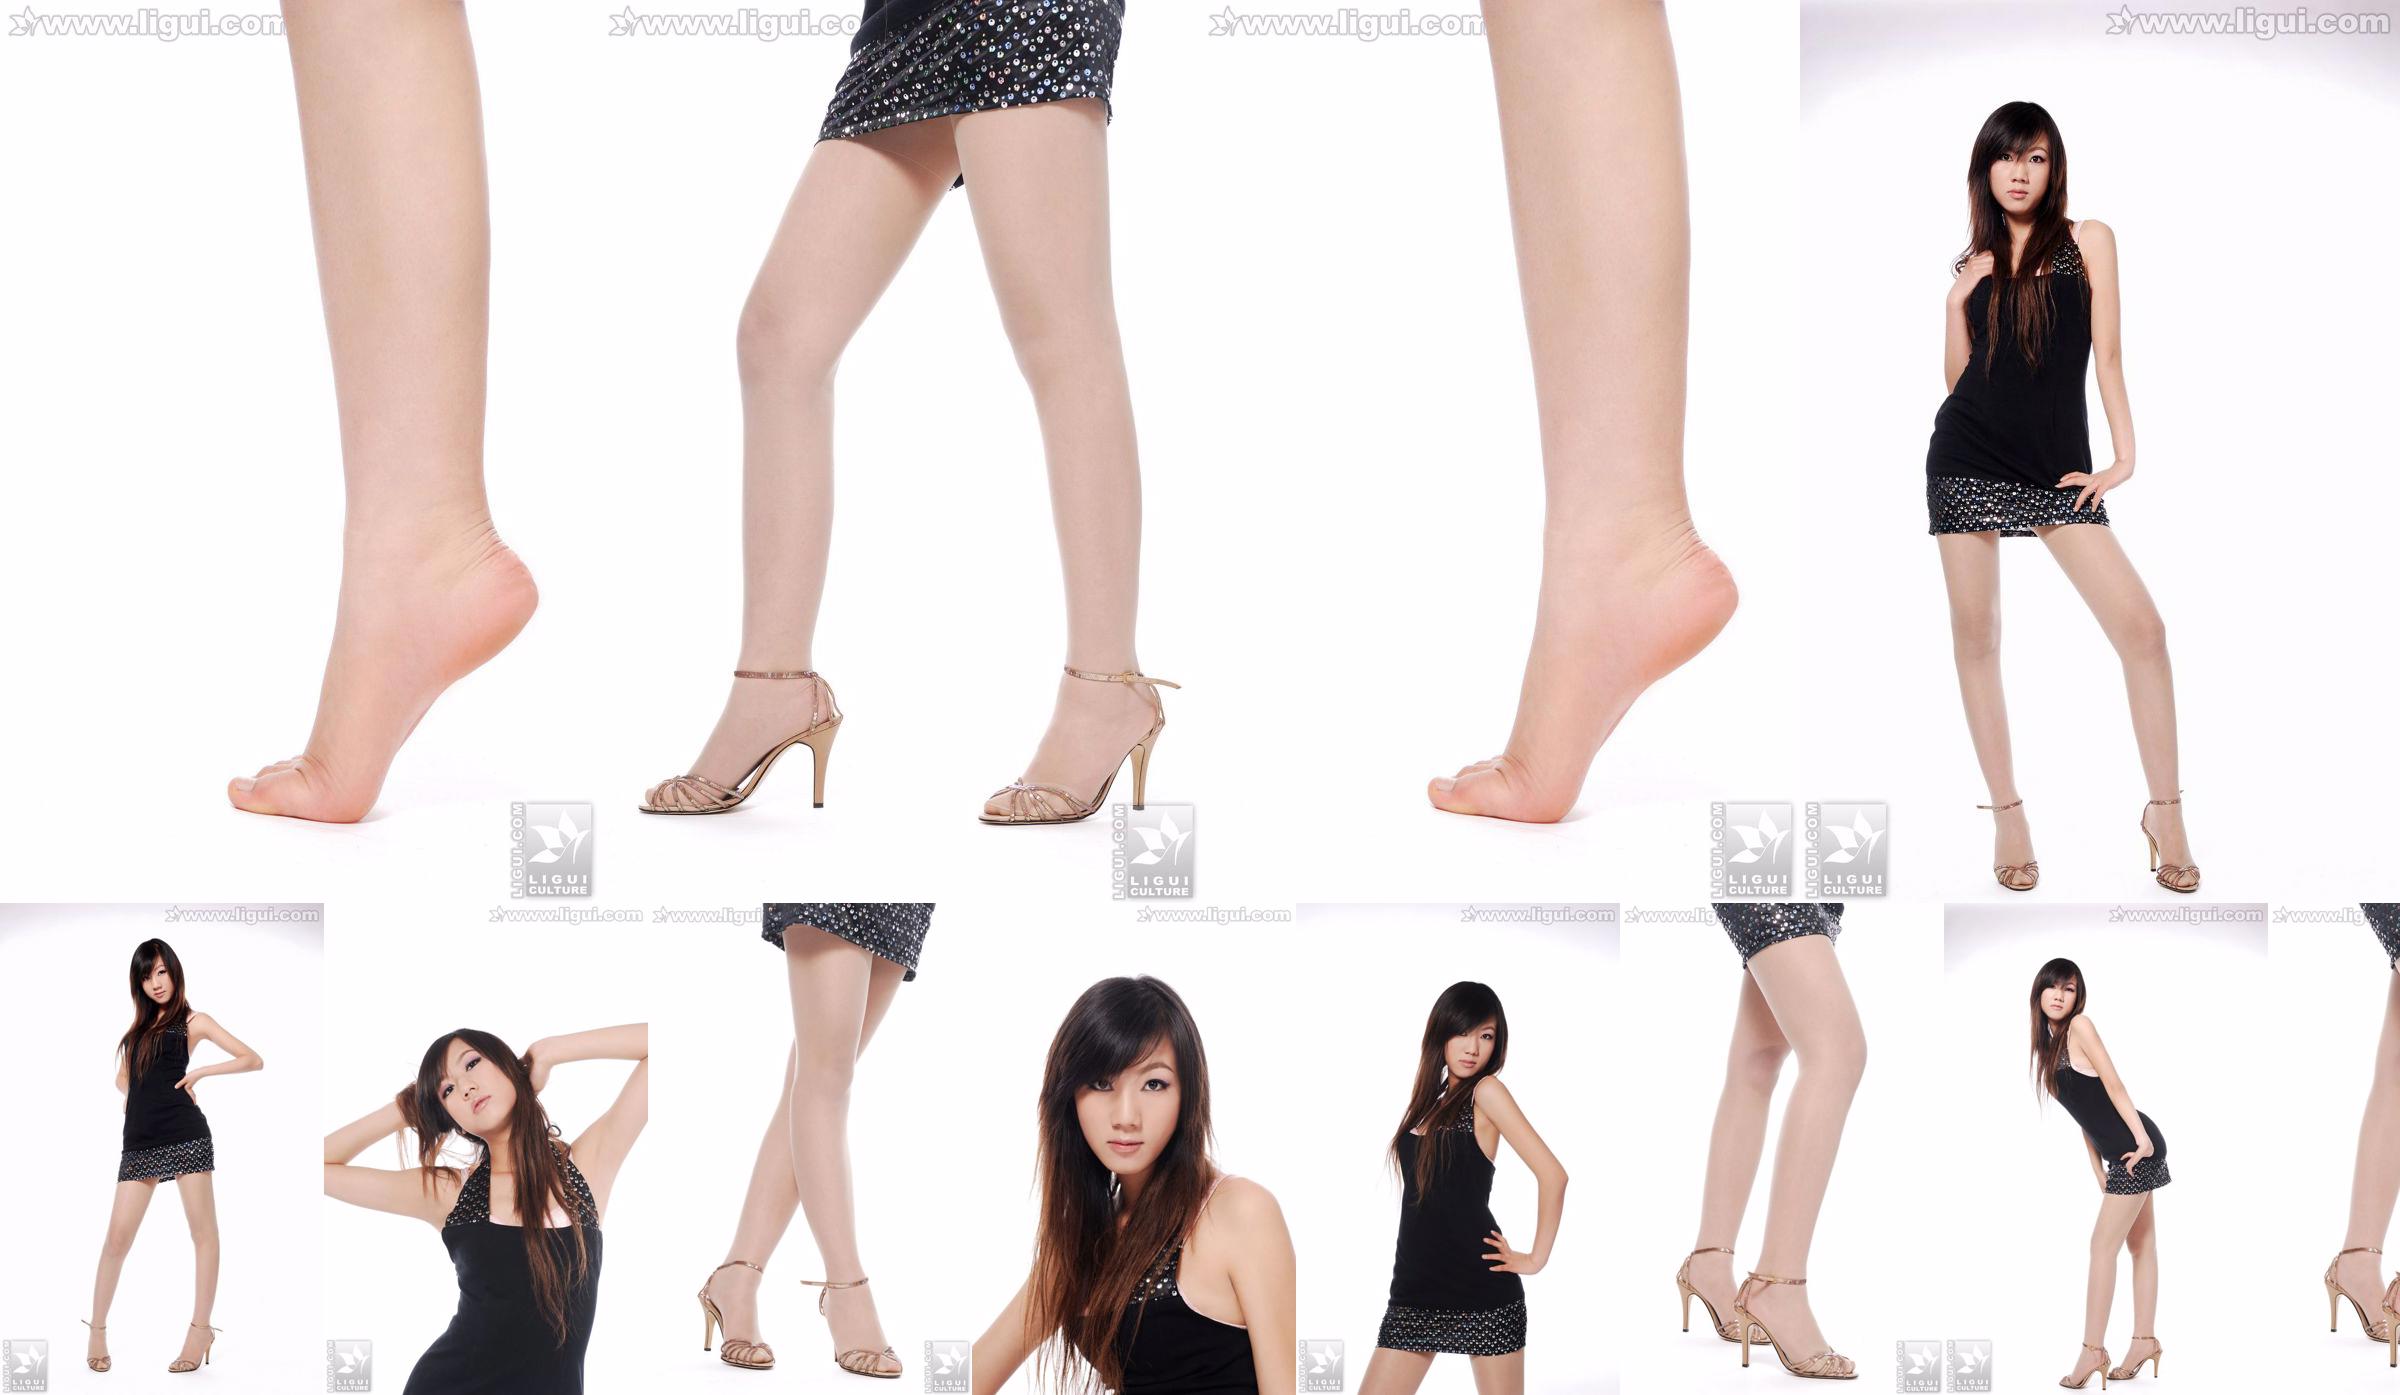 นางแบบ Sheng Chao "ส้นสูงหยกเท้าสวยโชว์ใหม่" [Sheng LiGui] ภาพถ่ายขาสวยและเท้าหยก No.d31dd5 หน้า 7